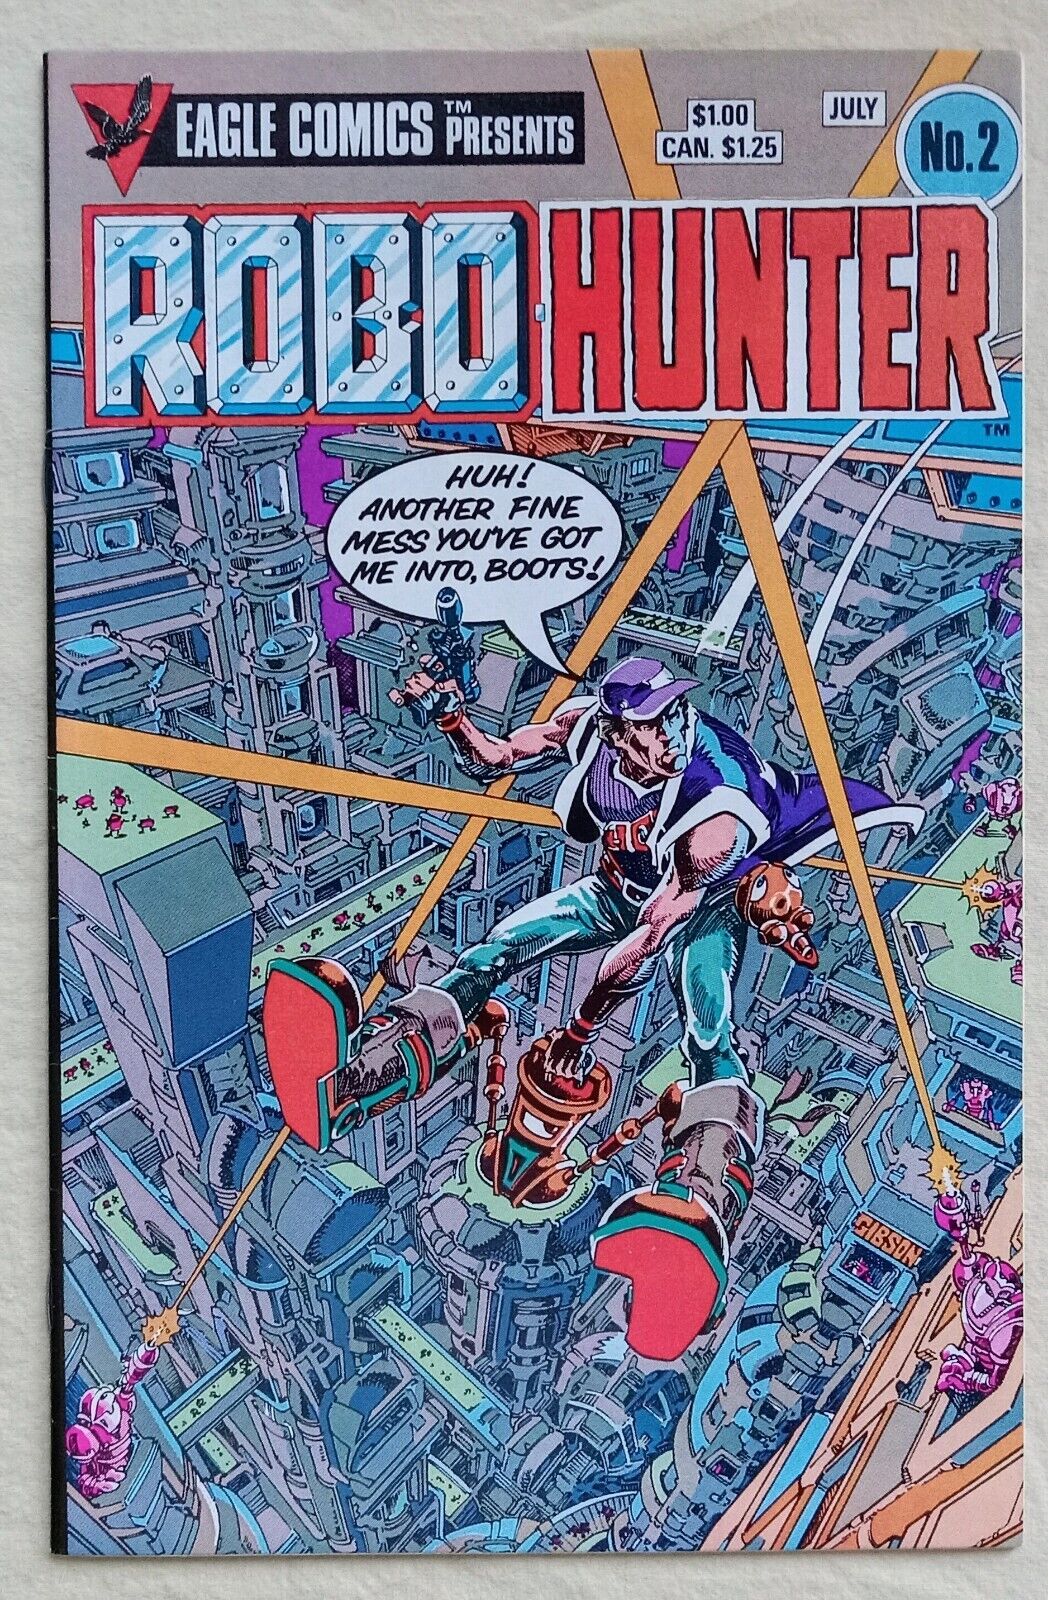 Robo-Hunter #2 (Eagle Comics July 1984) Fine 6.0 